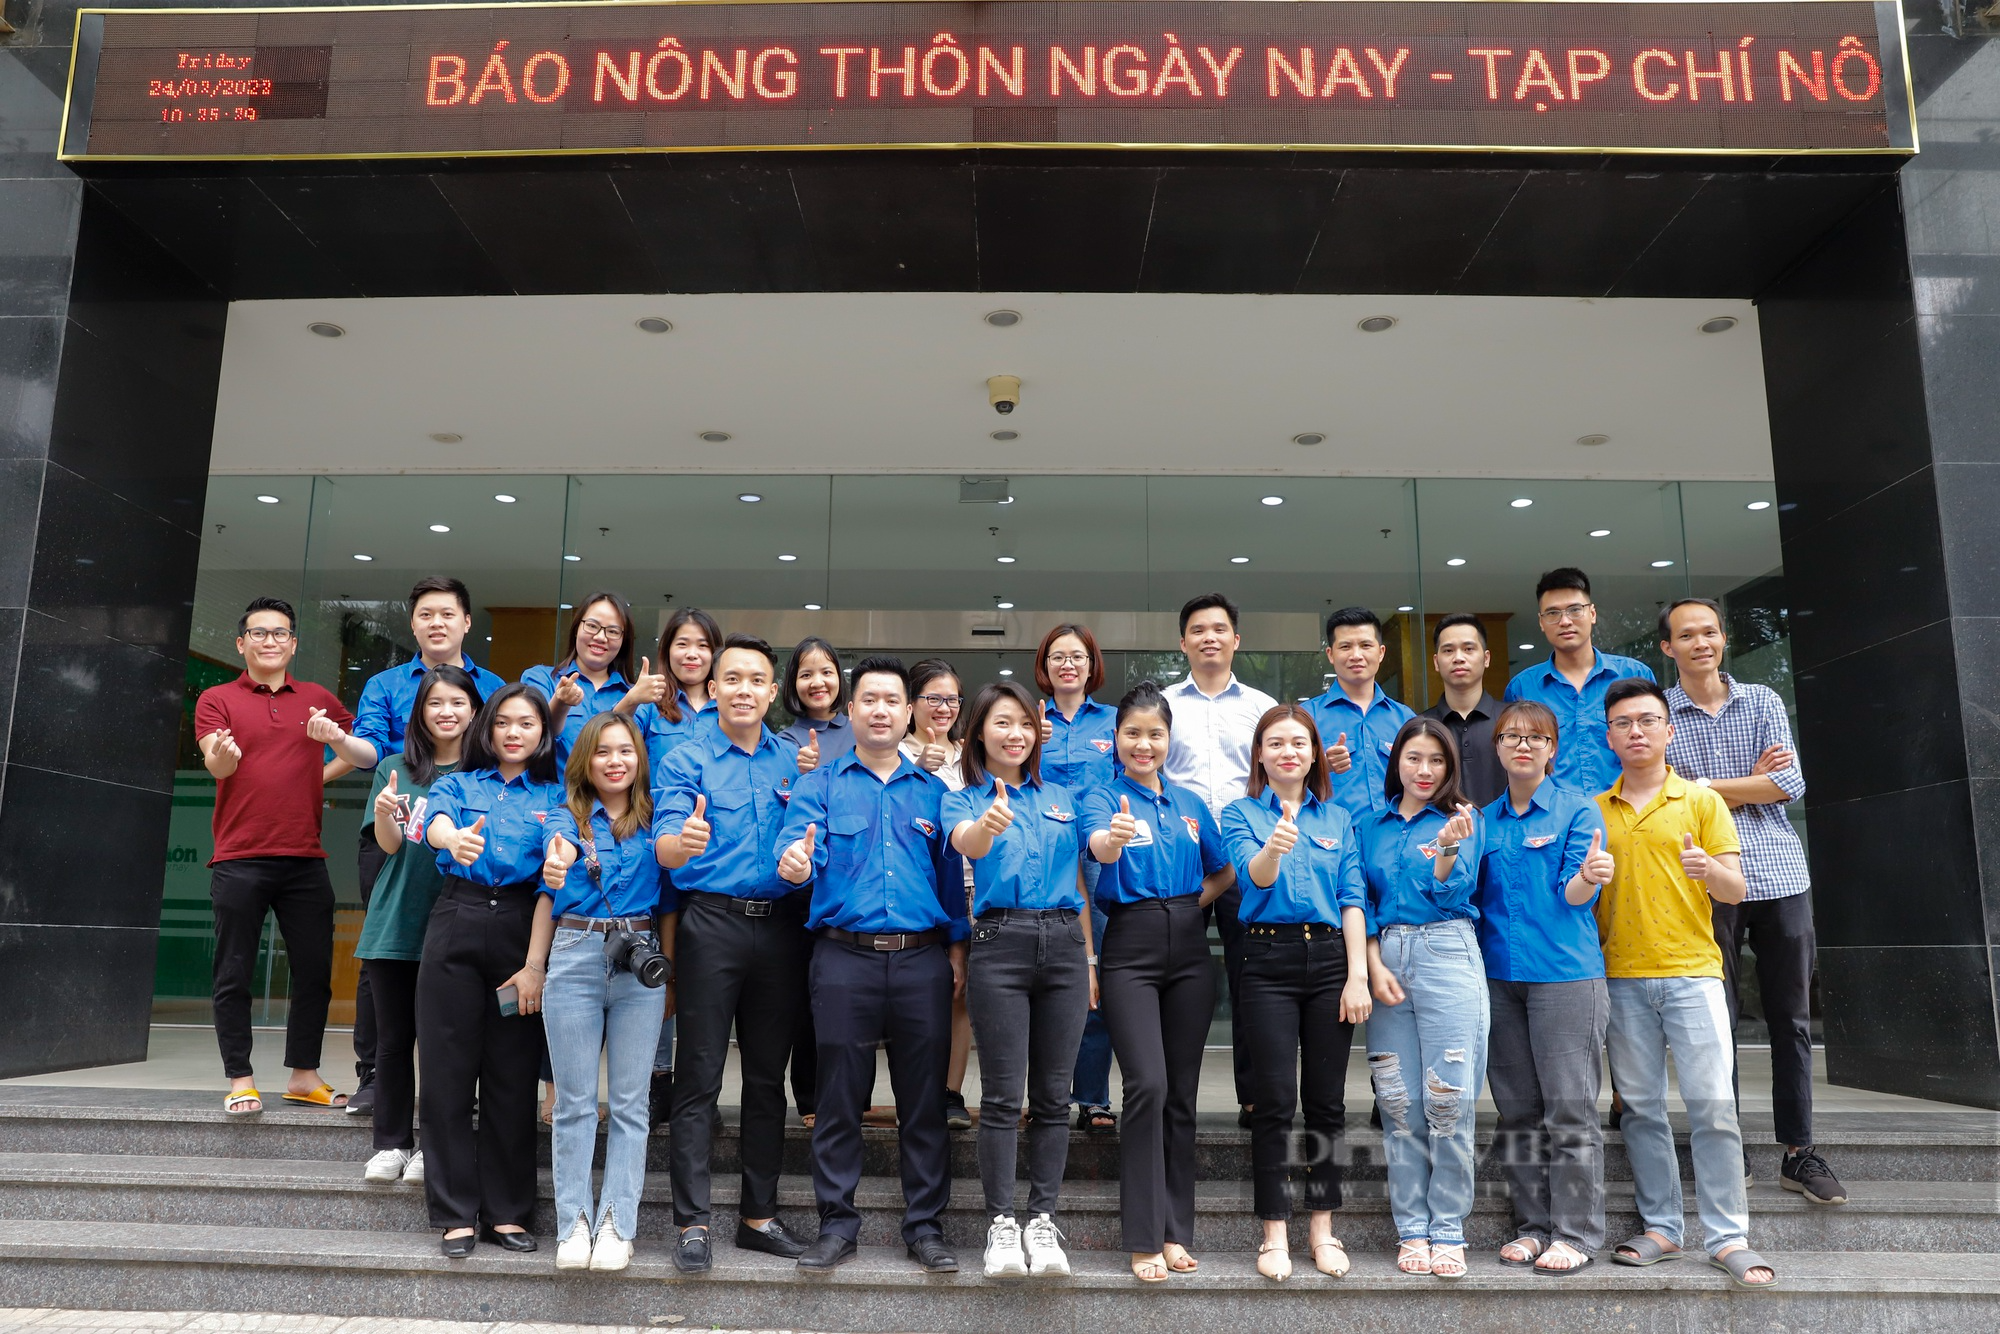 Tuổi trẻ Báo NTNN/Dân Việt chung tay vì môi trường cơ quan xanh-sạch-đẹp - Ảnh 10.